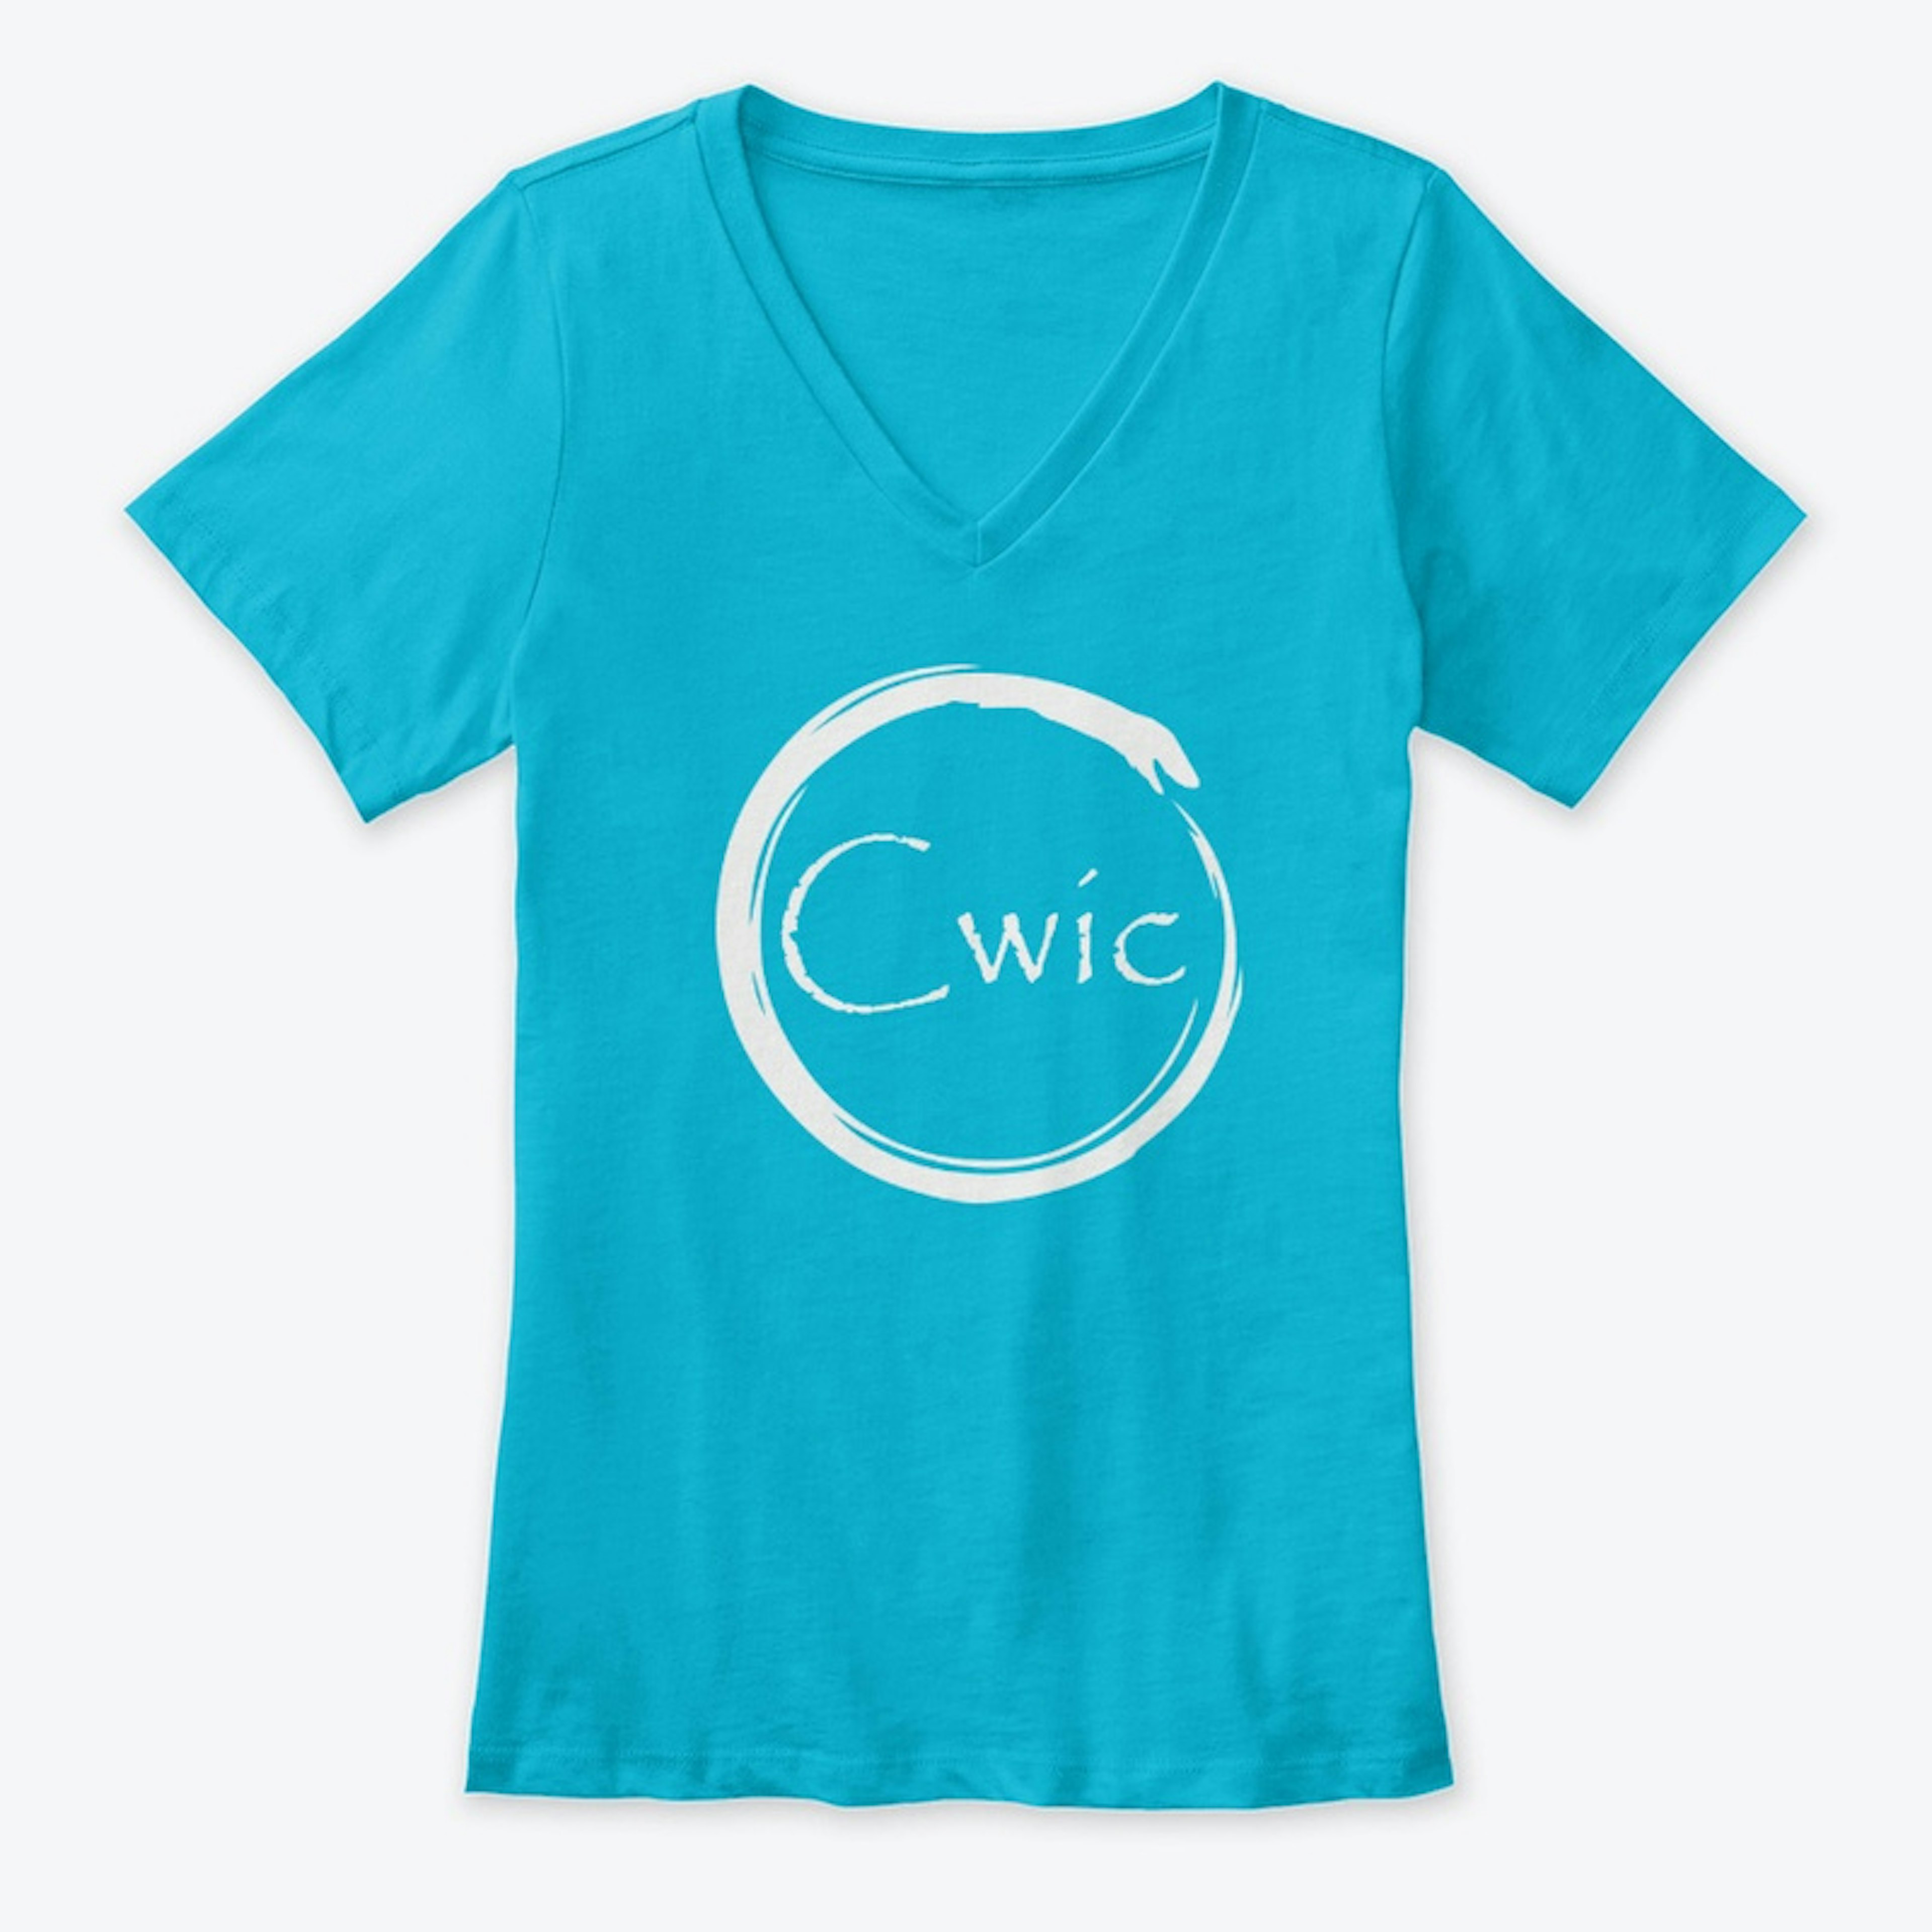 Cwic White Logo Women's Premium V-Neck